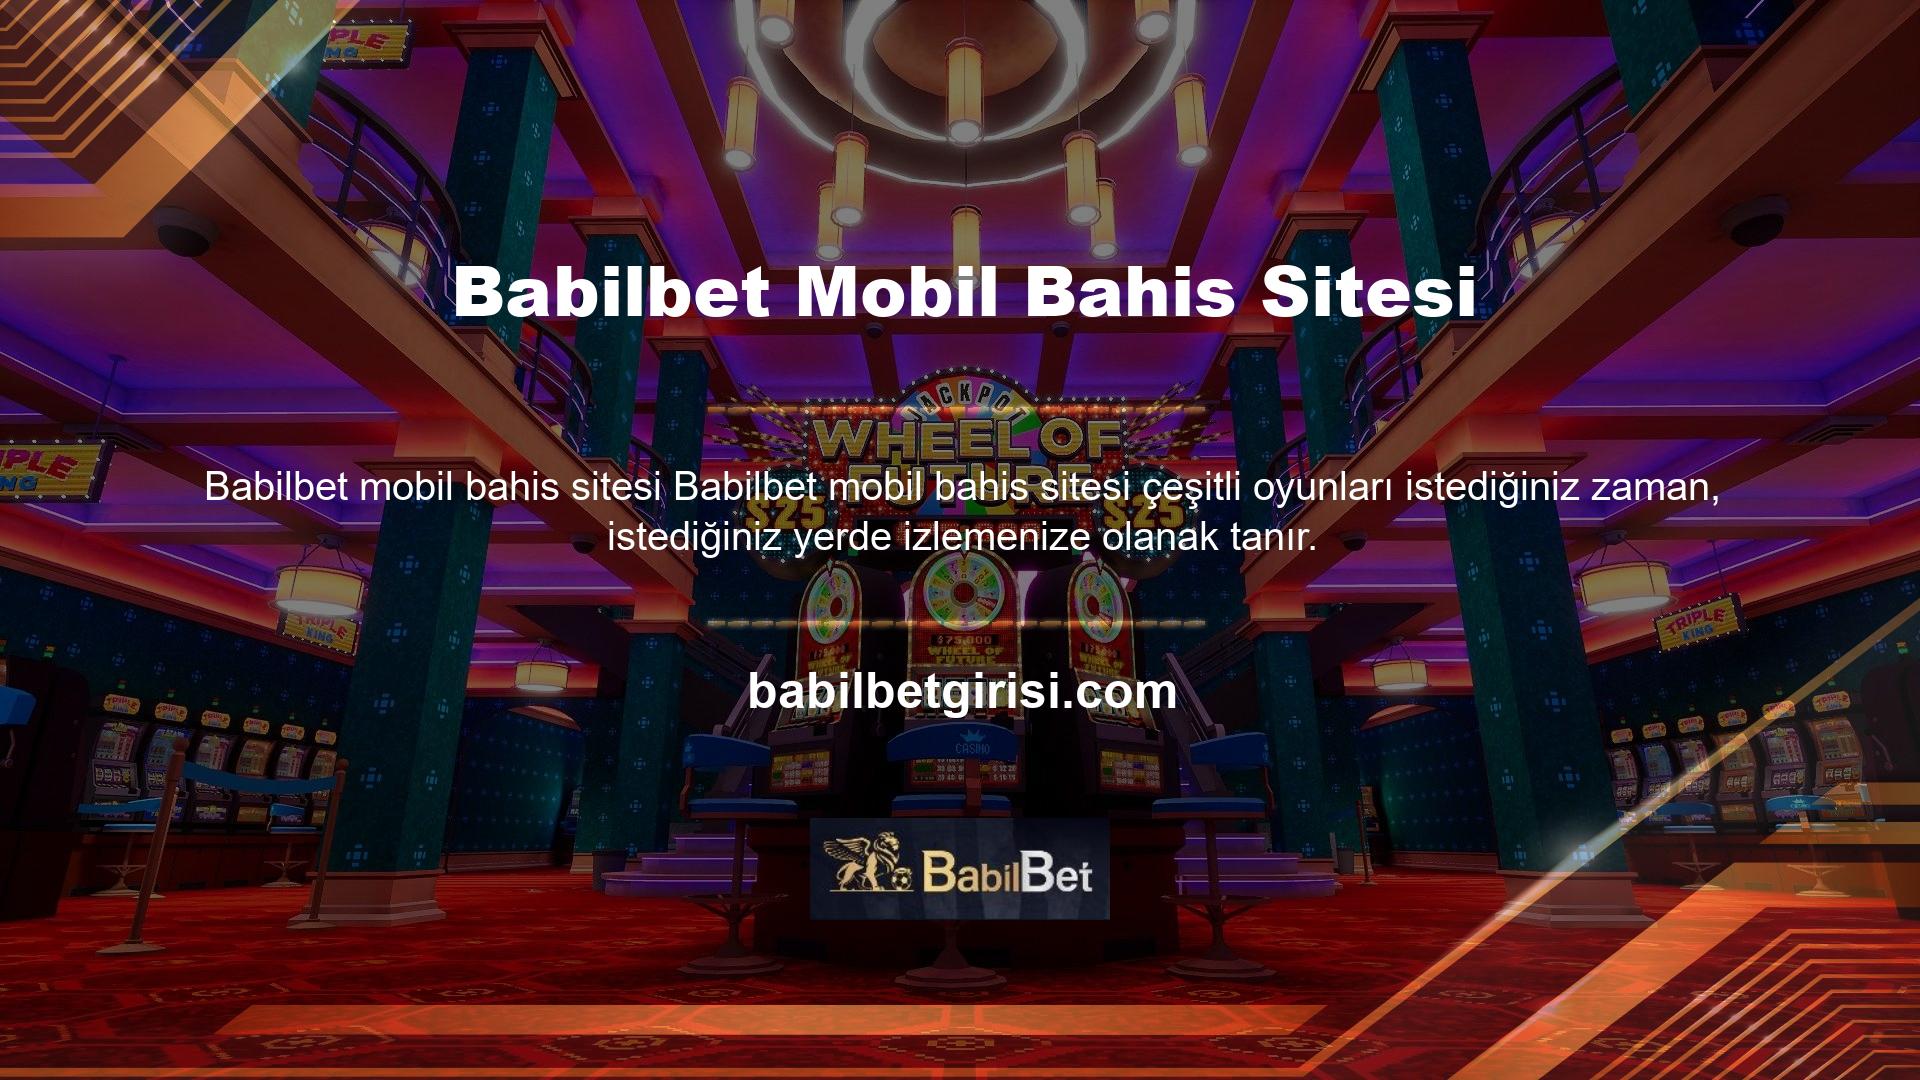 Casino sektörünün en iyi sitelerinden biri olan Babilbet, en son güncellenen Babilbet giriş adresi ile yeni kullanıcılarını bekliyor